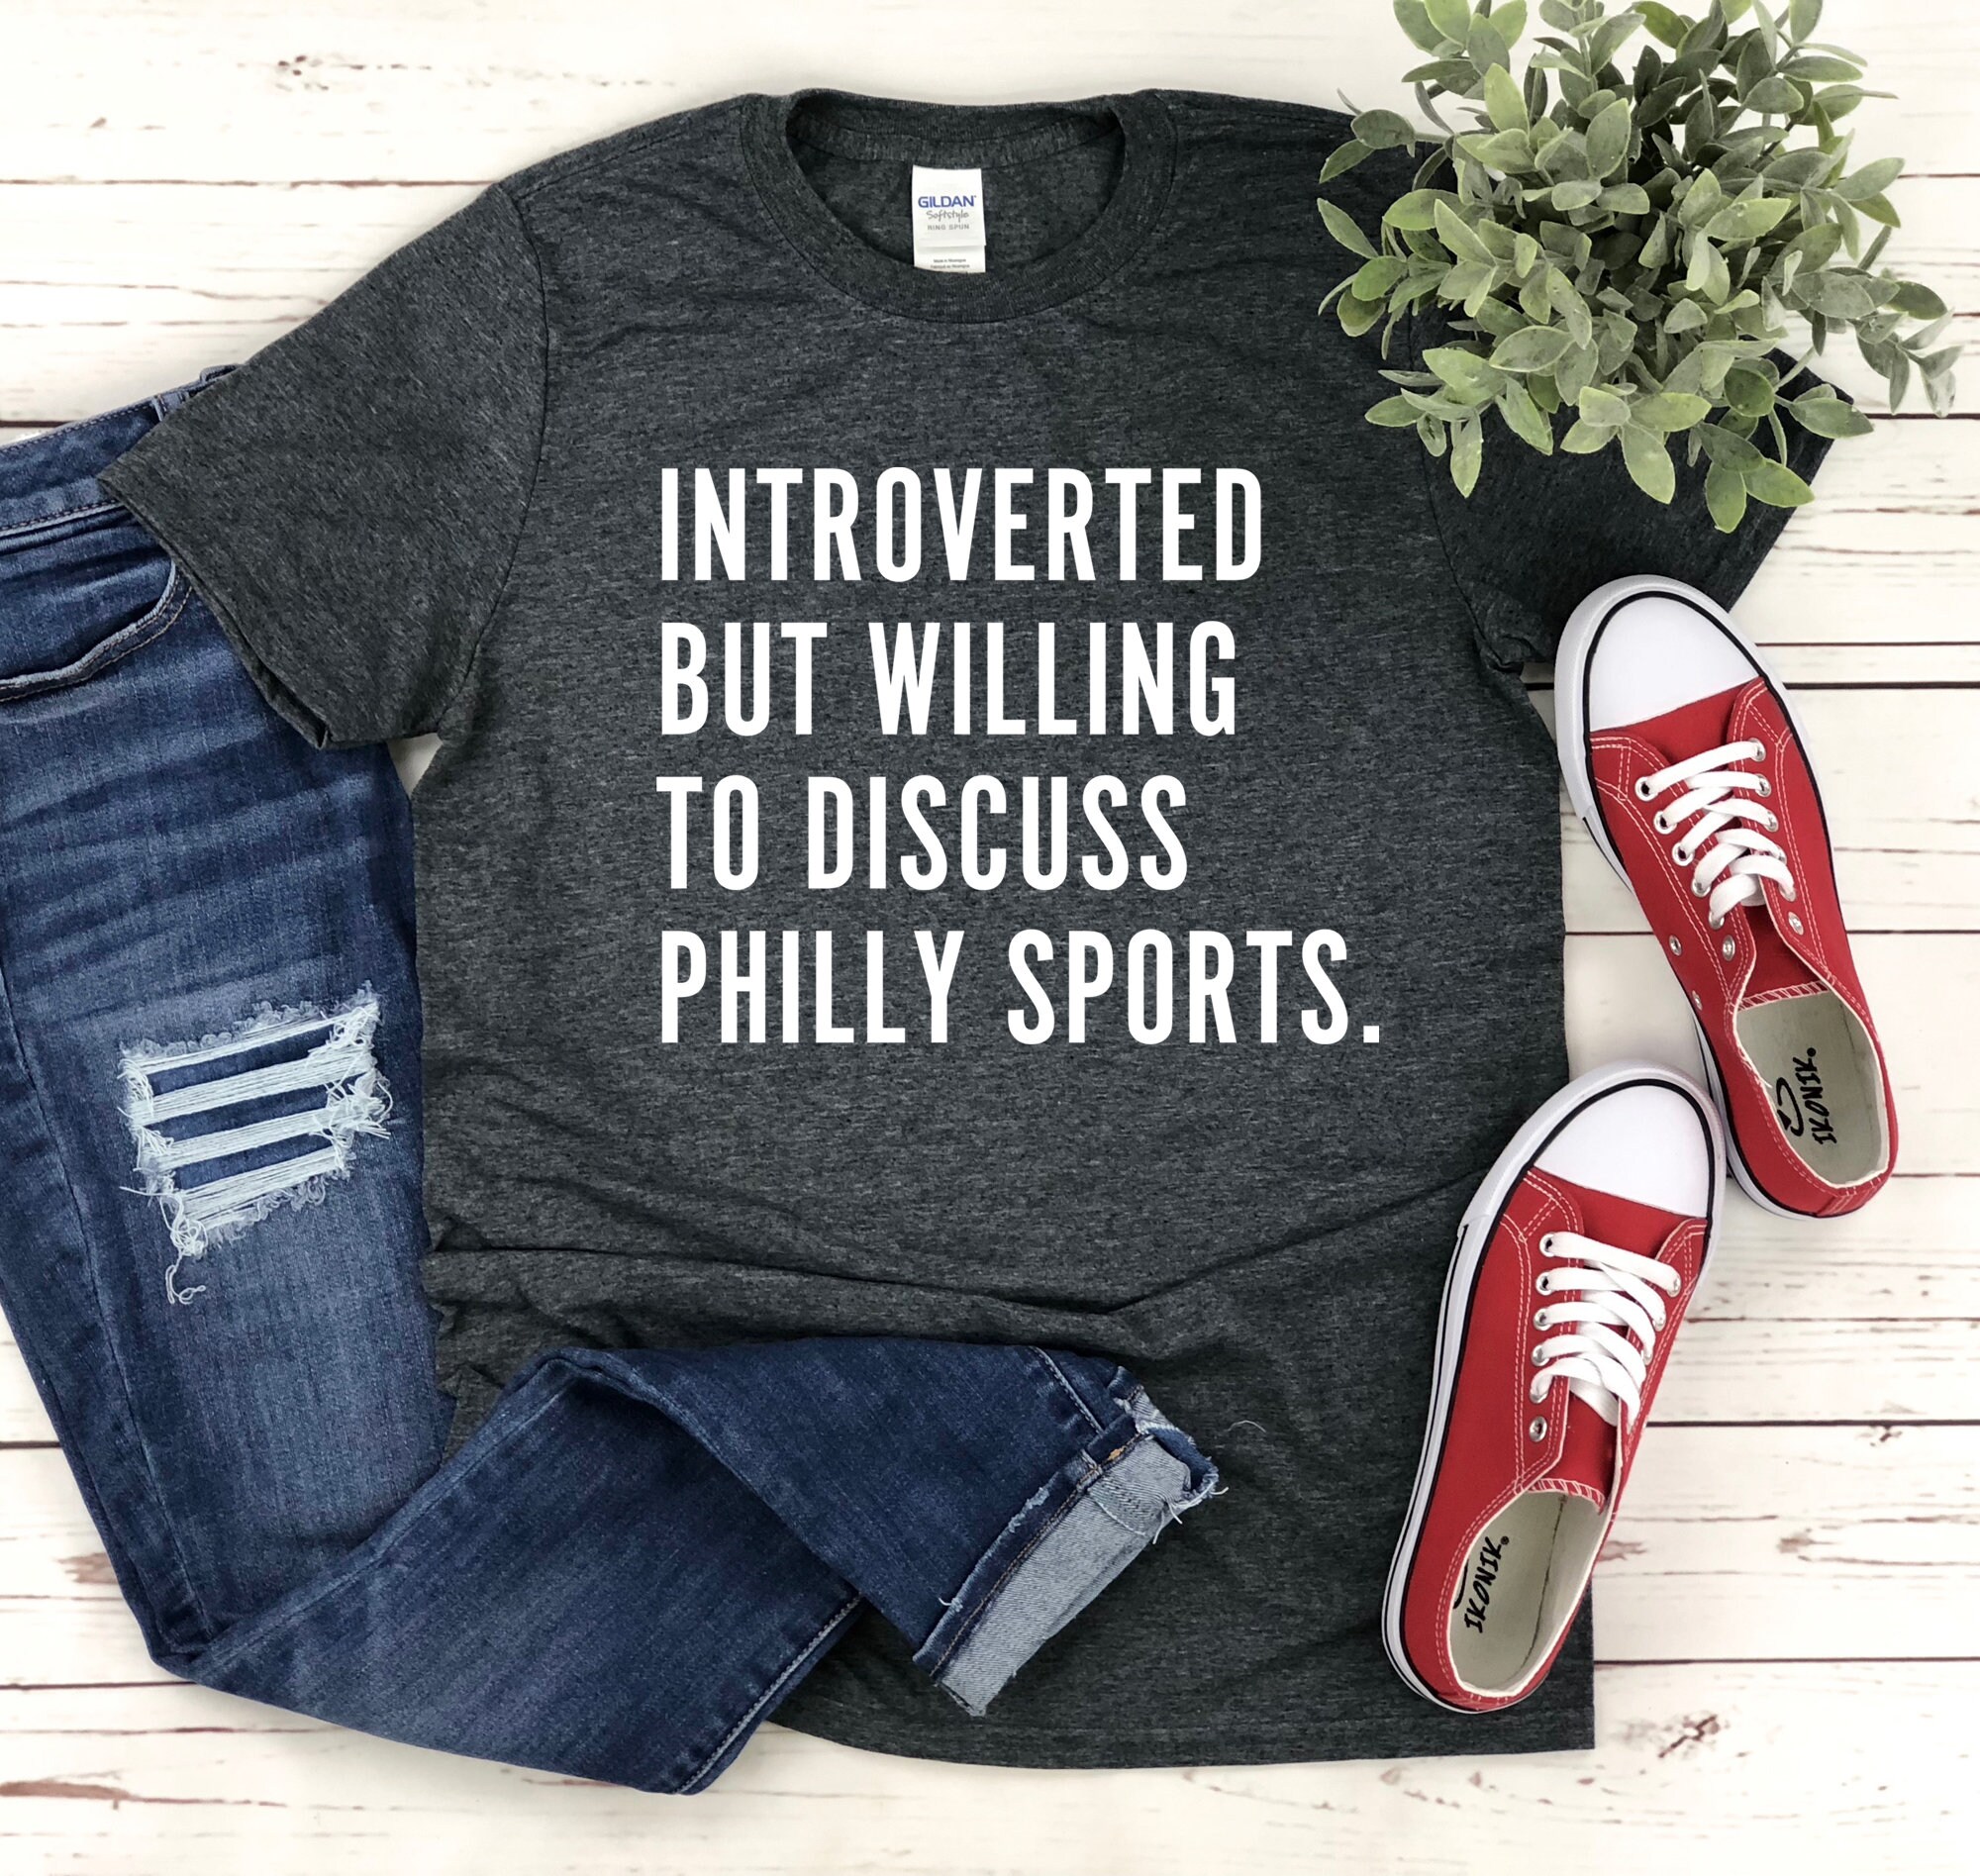 Men's Starter Black Philadelphia Flyers Offense Long Sleeve Hoodie T-Shirt